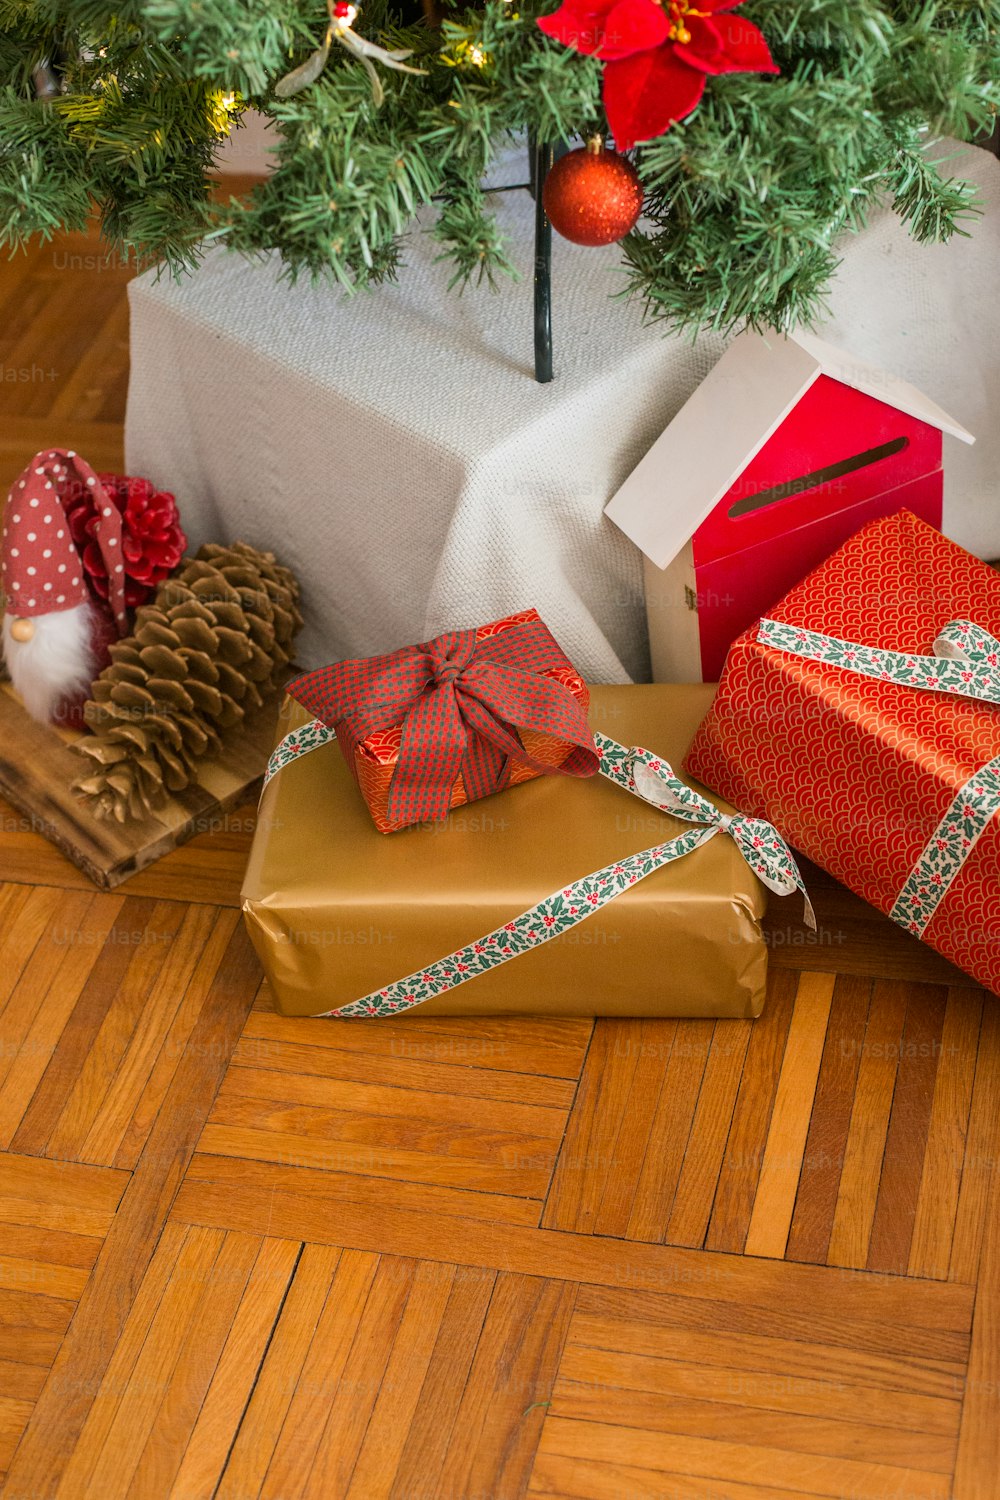 Cadeaux sous un sapin de Noël sur un plancher en bois